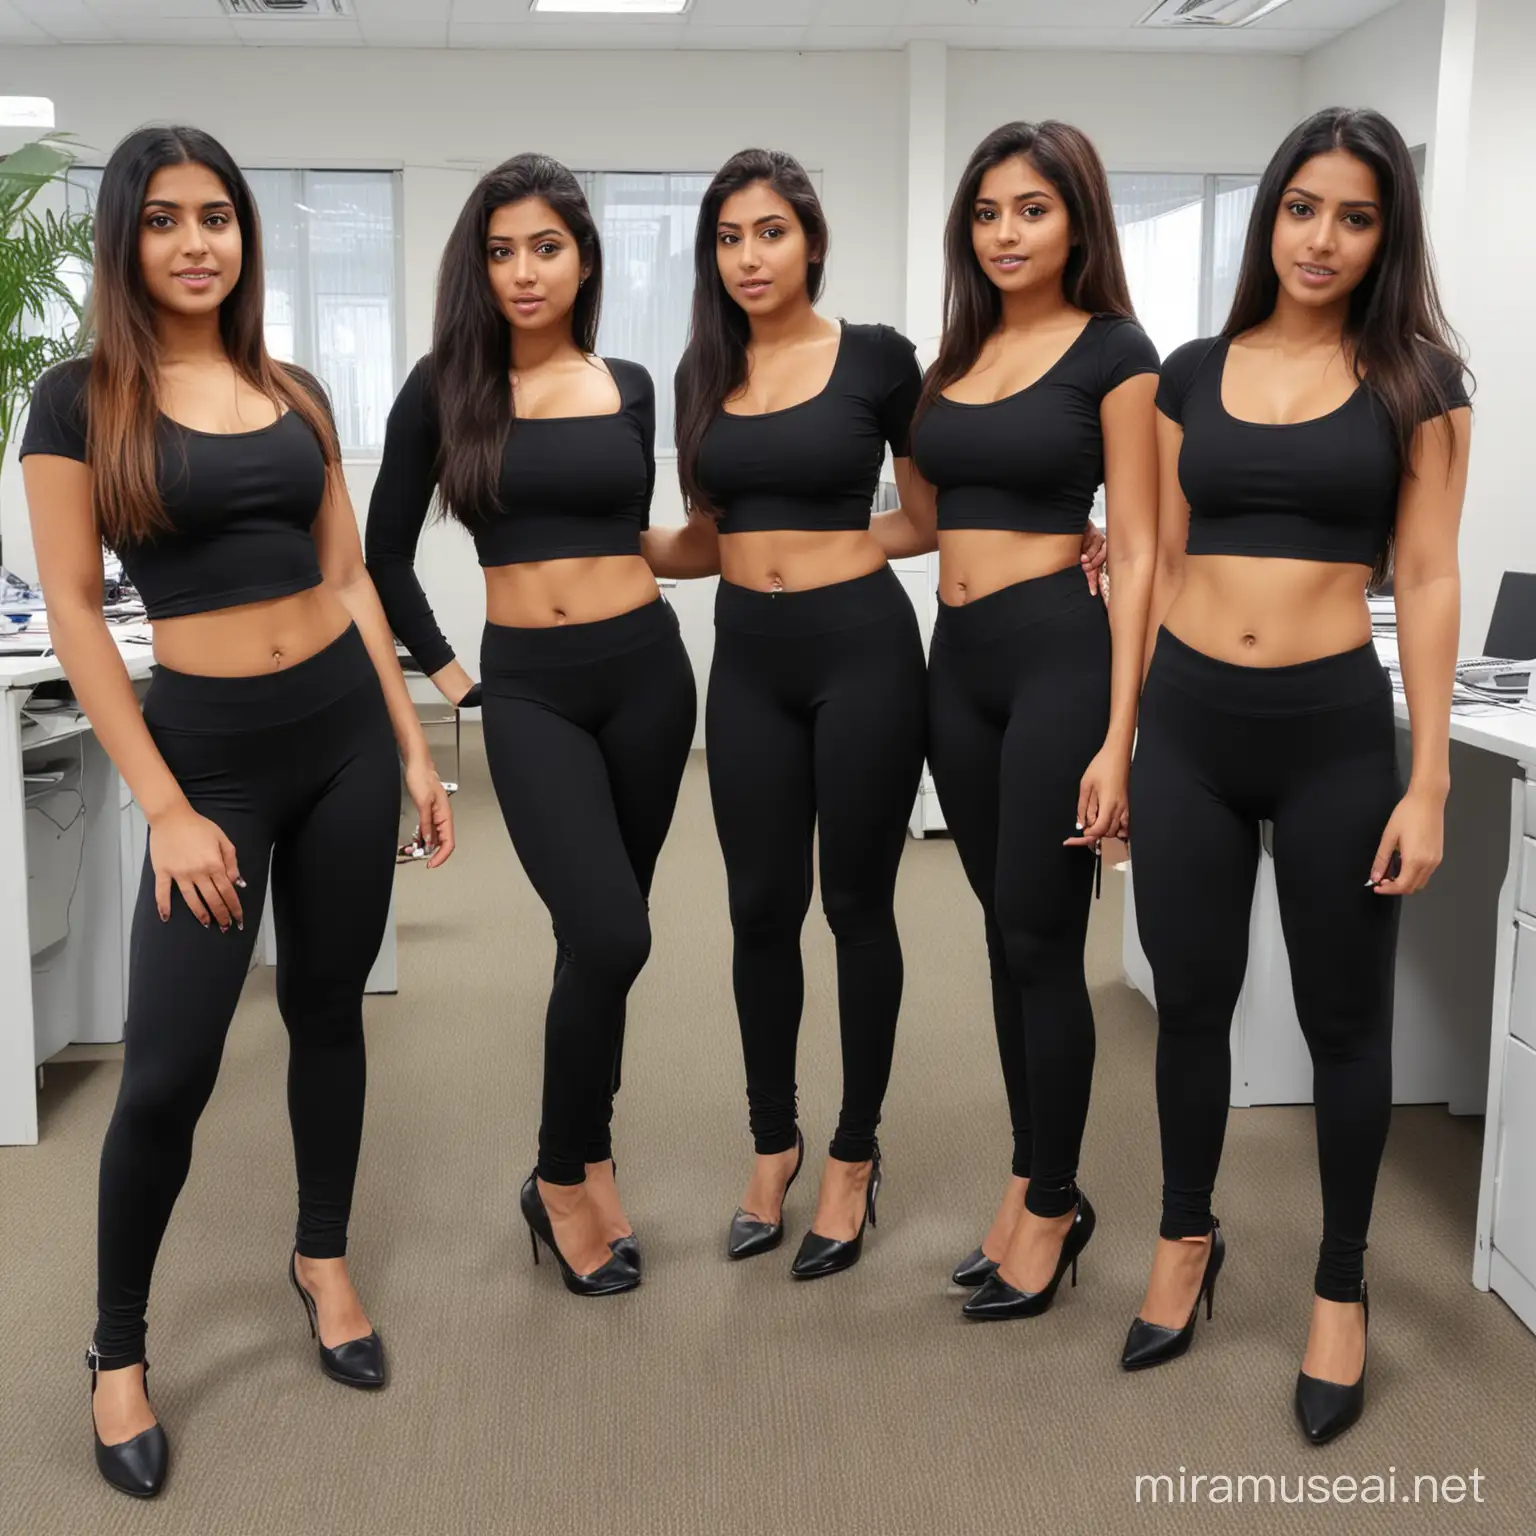 five indian girls inside office  camel toe  wearing tight black leggings in office 